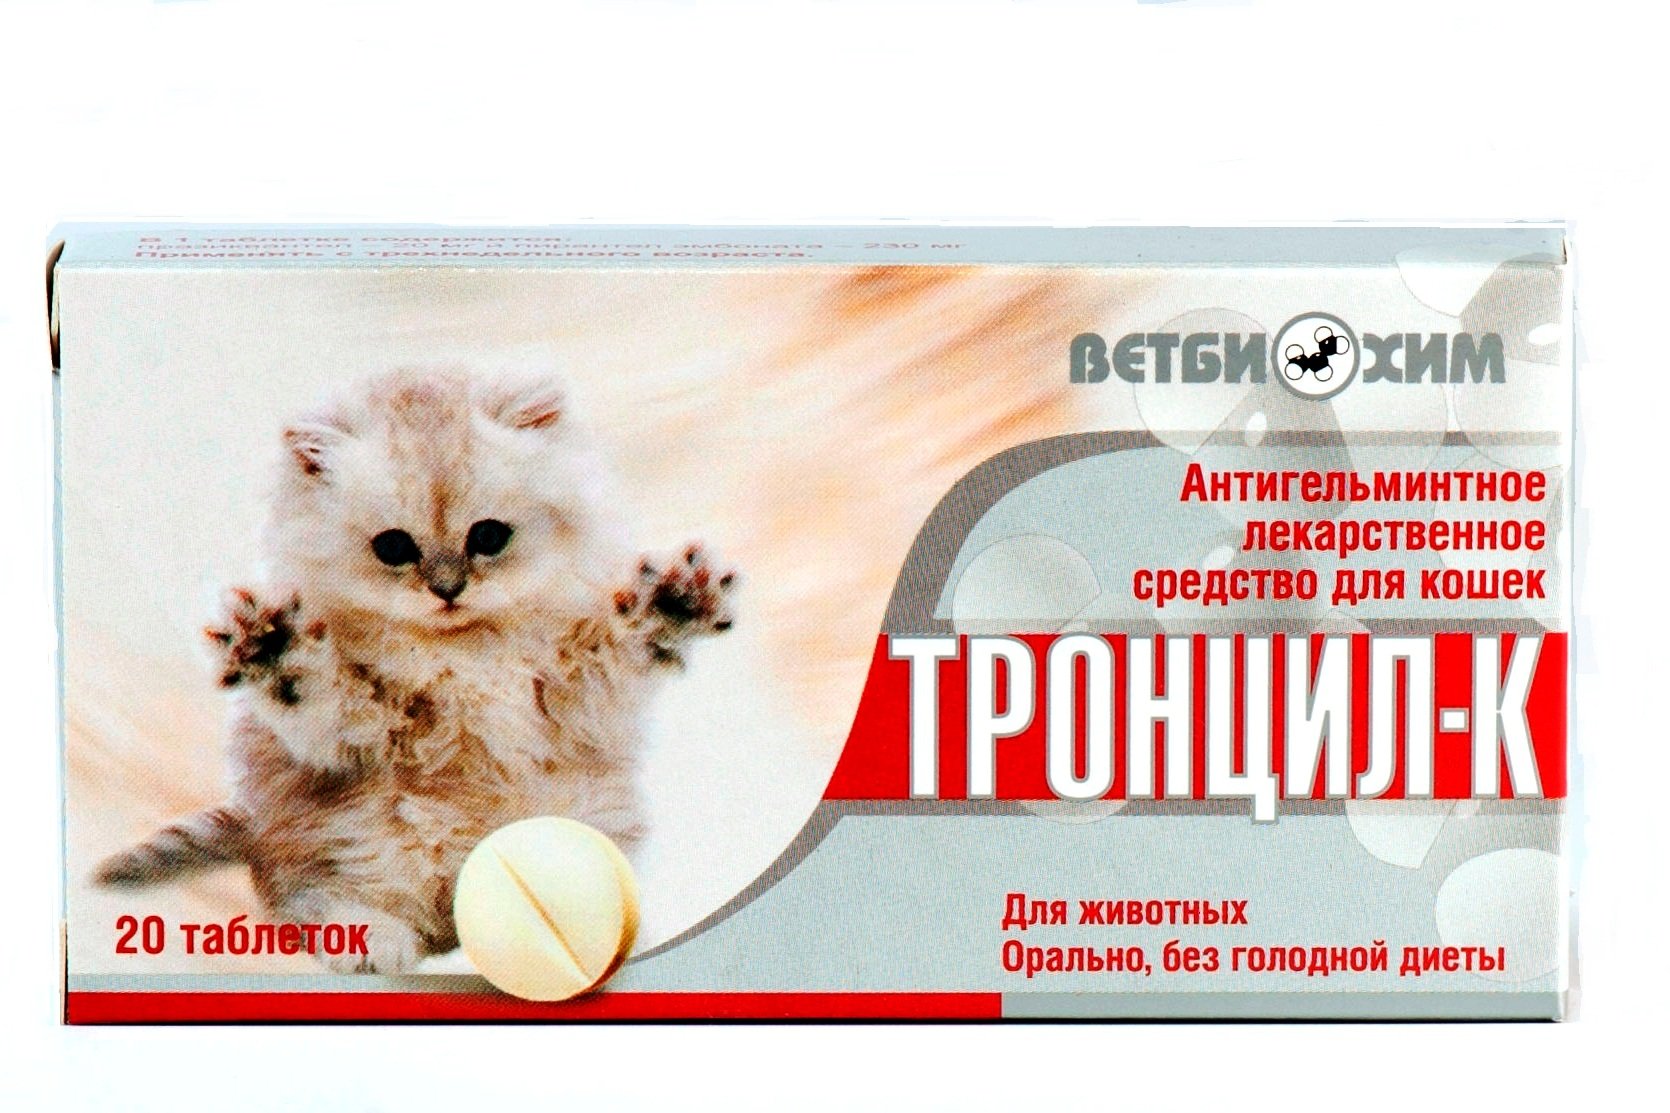 Купить лекарства кошки. Глистогонные препараты для кошек таблетки. Таблетки для живота. Тронцил-к для кошек. Противоглистное средство для кошек.